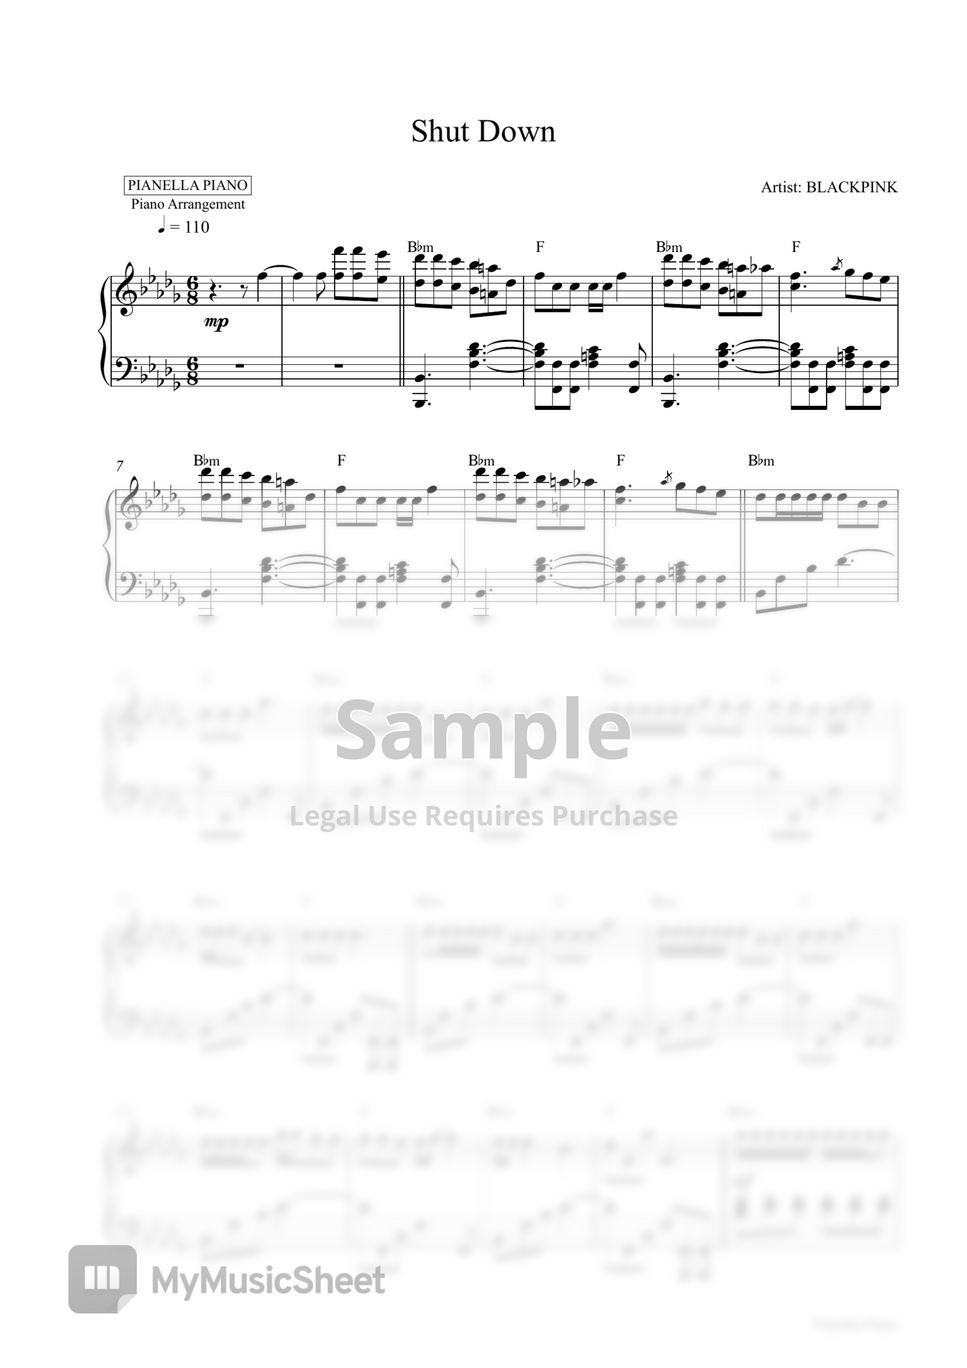 BLACKPINK - Shut Down (Piano Sheet) by Pianella Piano